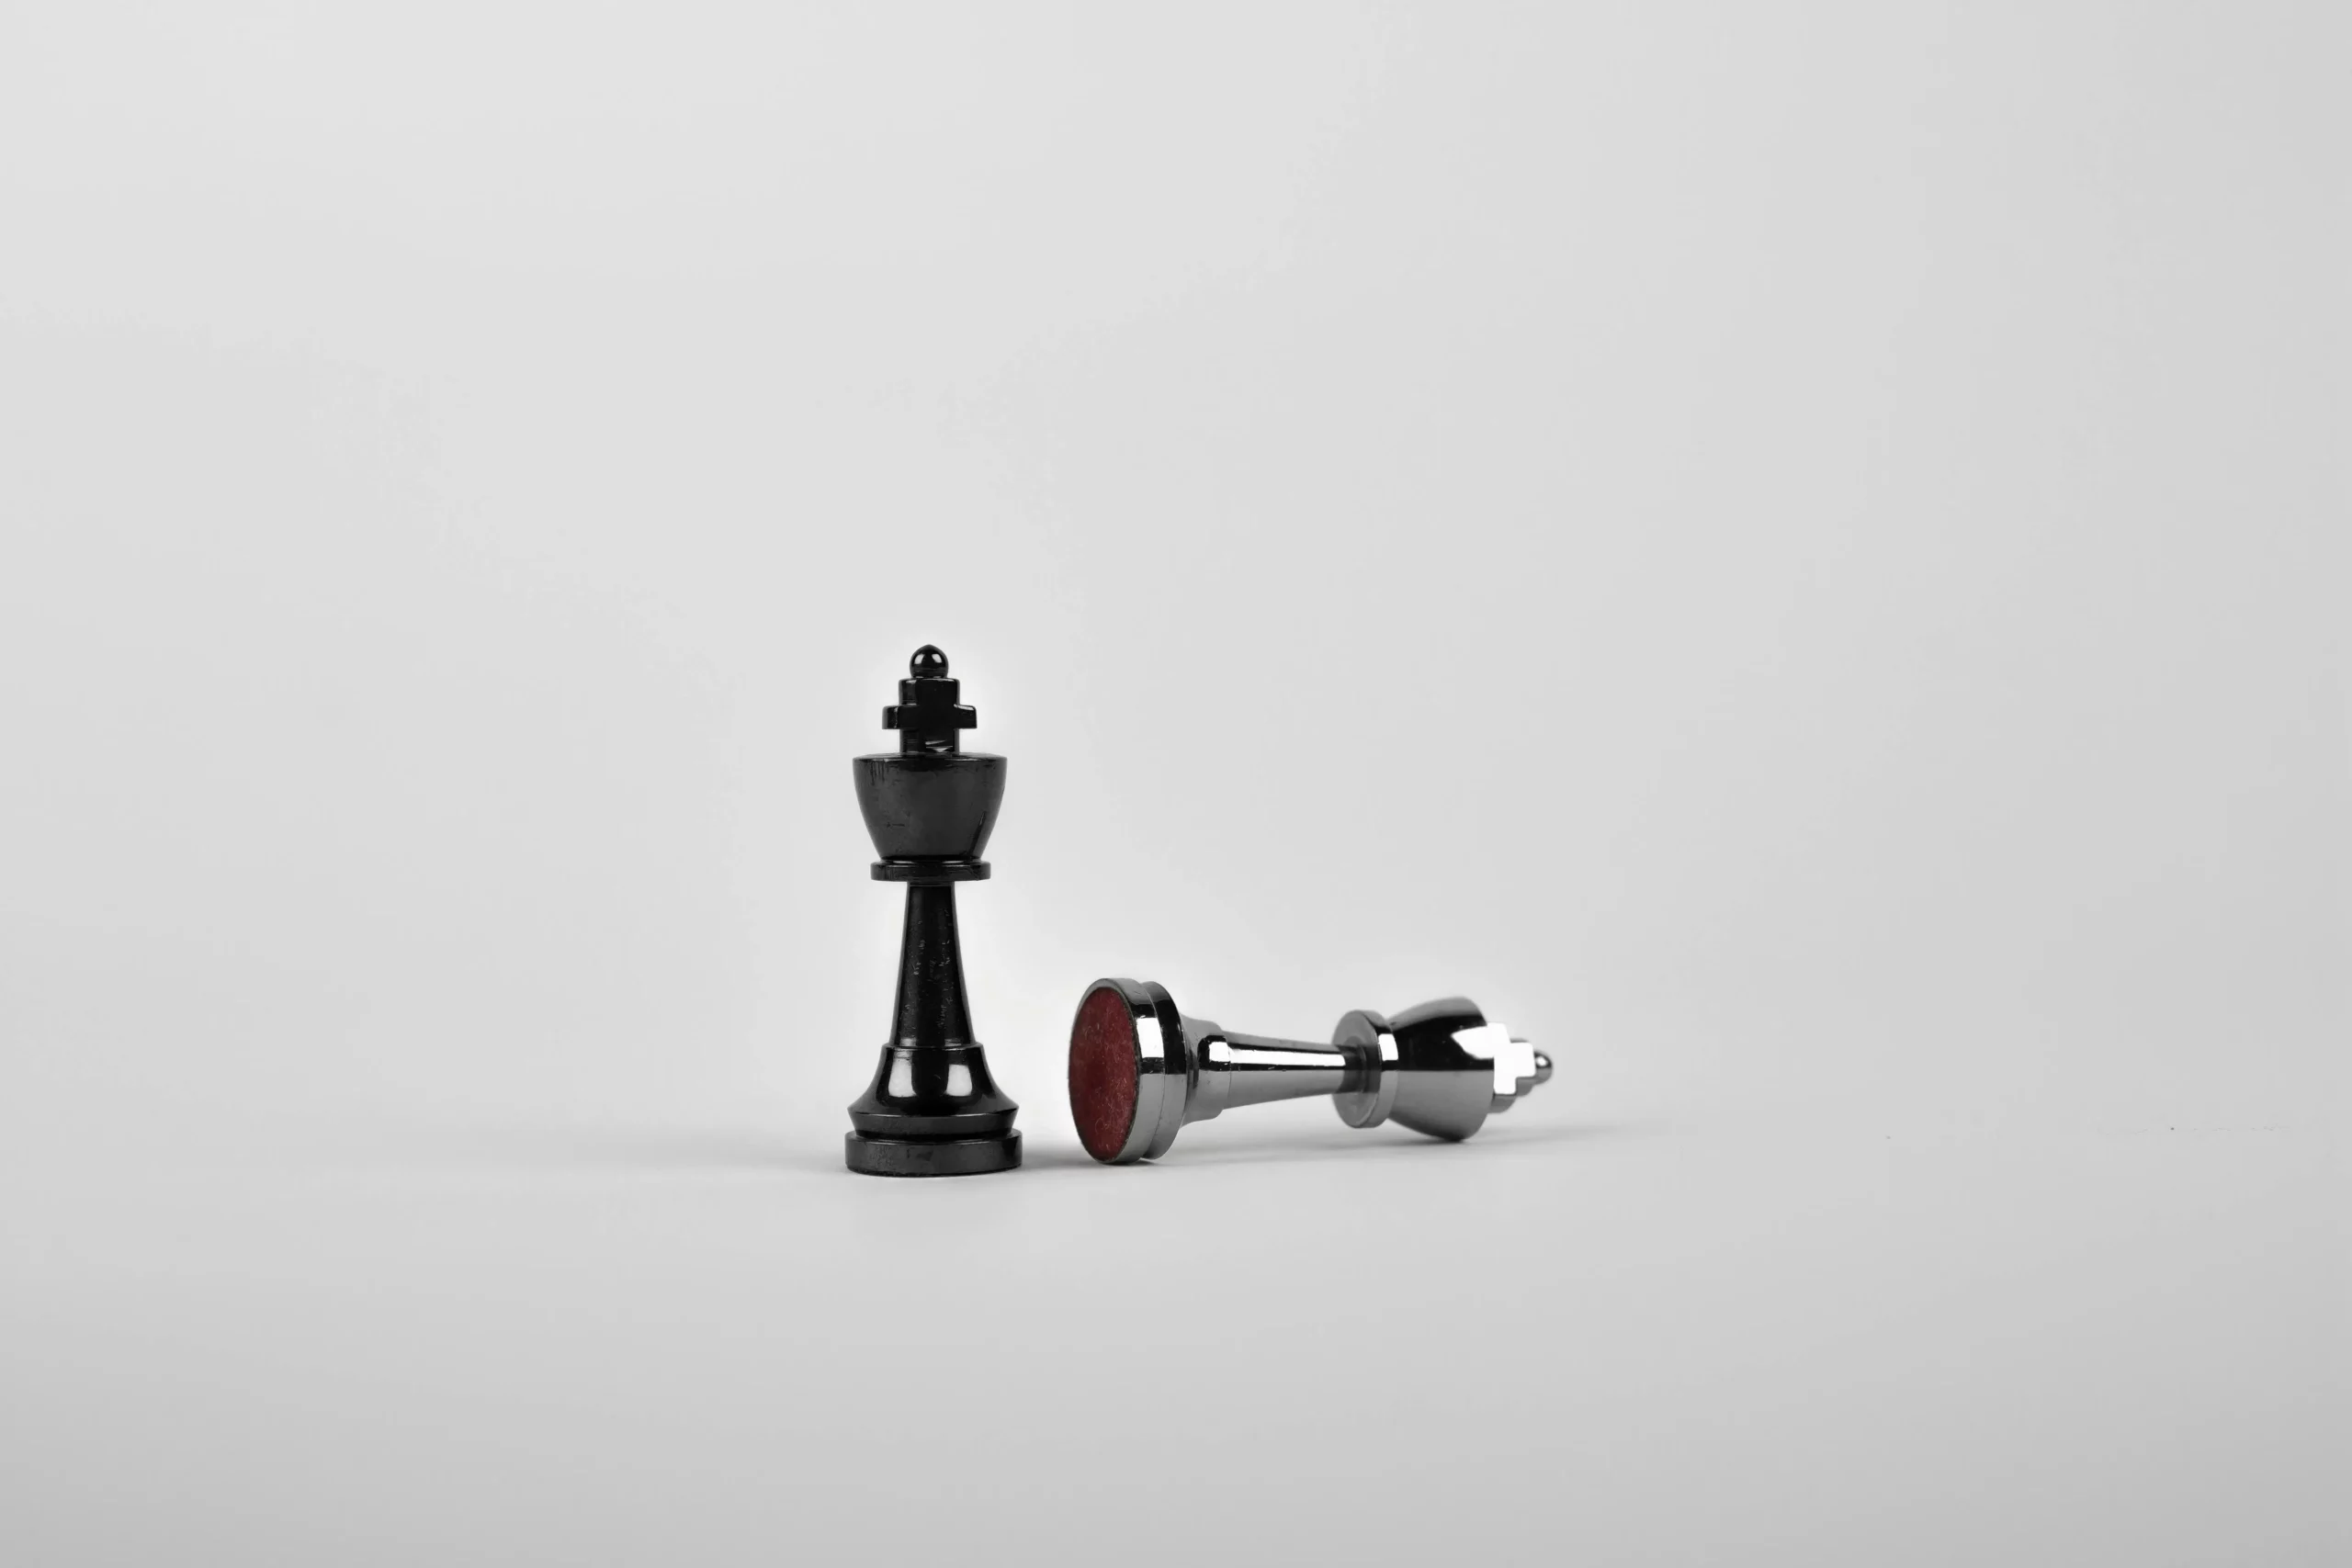 Se muestran 2 piezas de ajedrez, la reina y el rey